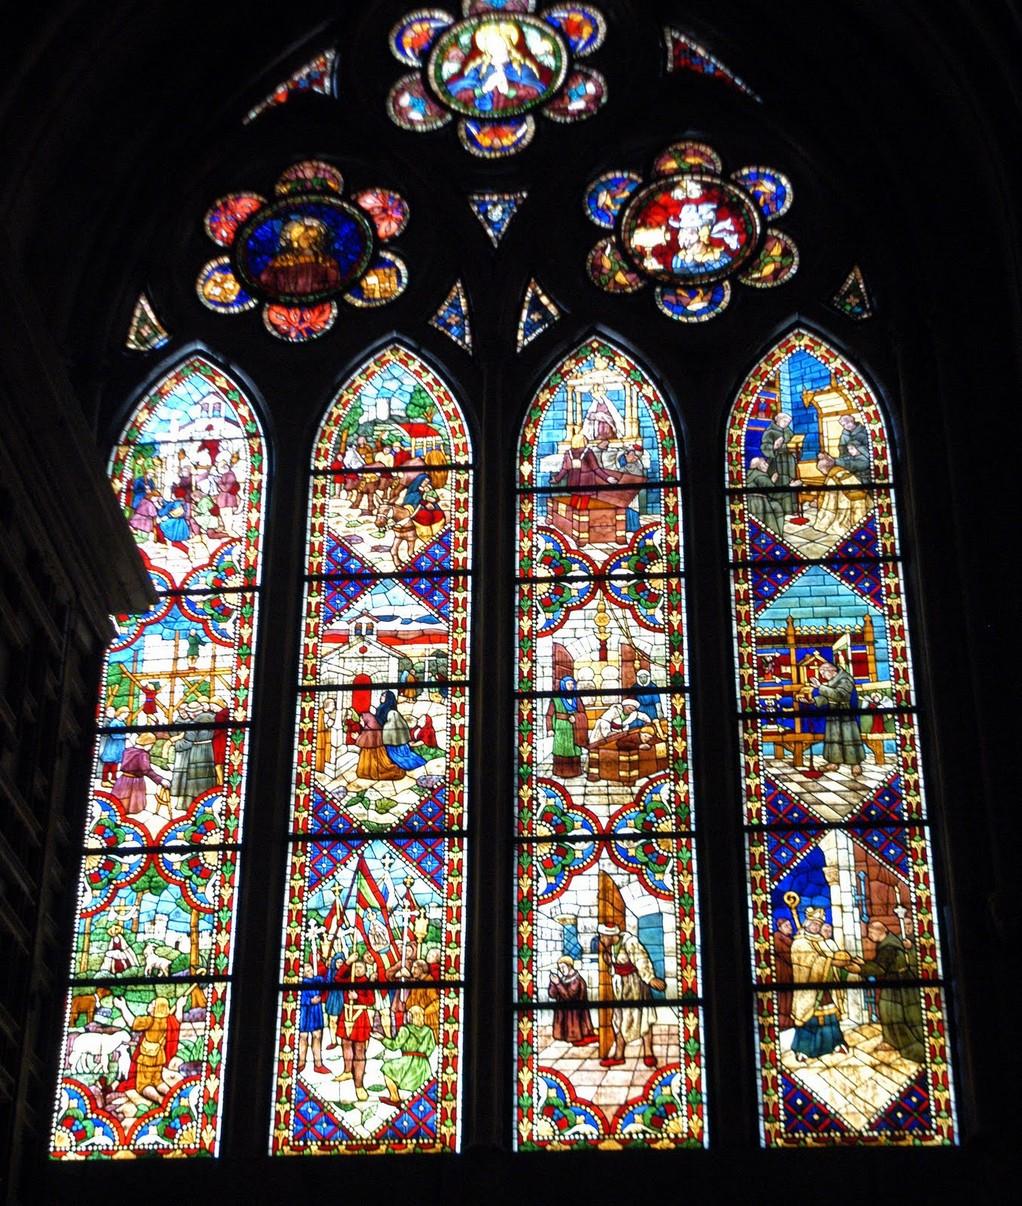 Las vidrieras Las vidrieras cumplían una triple función: protegían del frío, creaban una luz coloreada y un espacio espiritual en el interior de la catedral, y simbolizaban la luz divina.